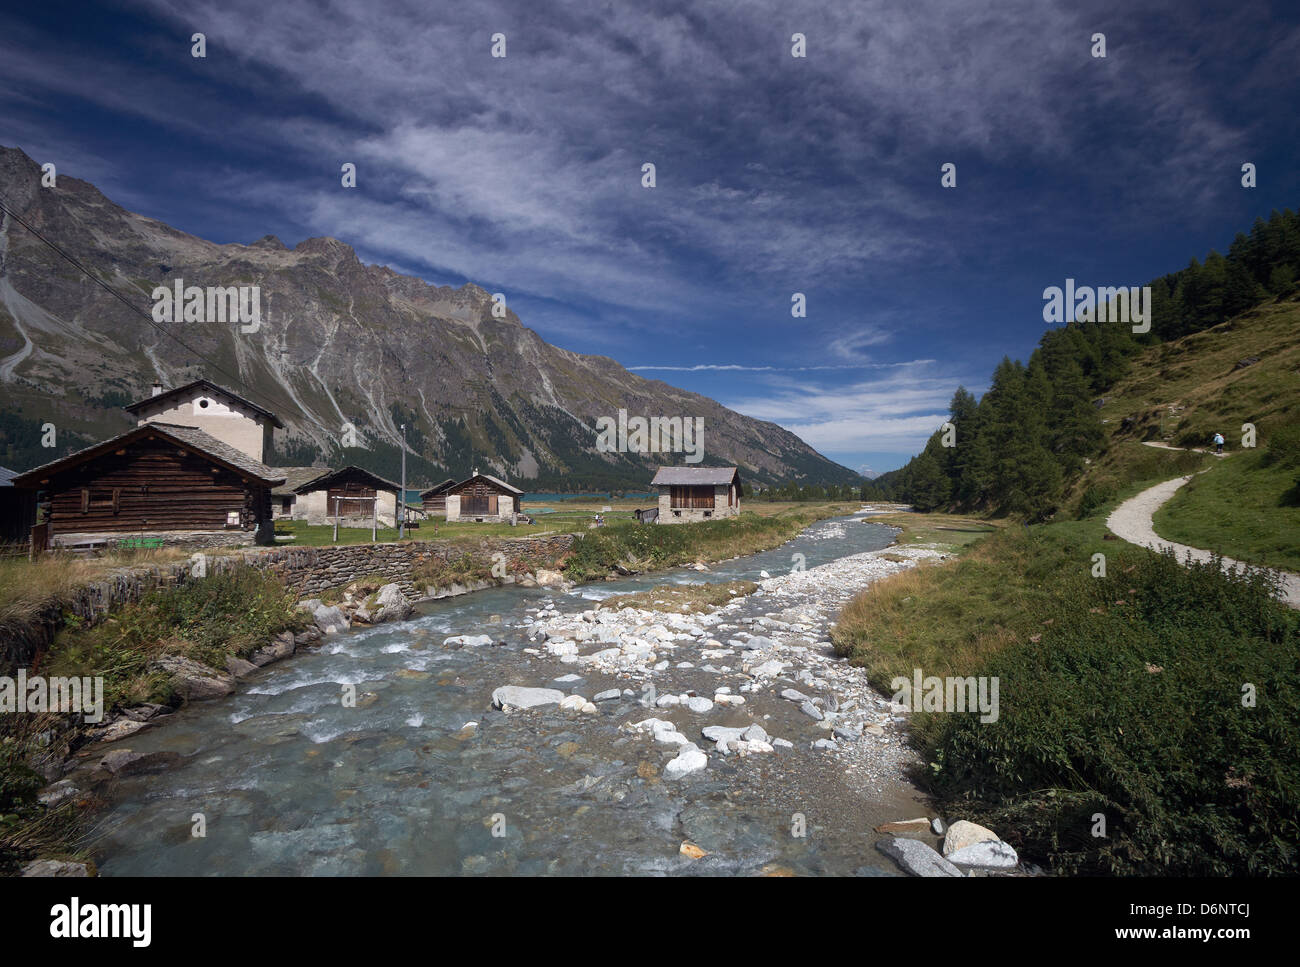 Isola, Switzerland, the small hamlet of Isola on Suedufer of Lake Sils Stock Photo